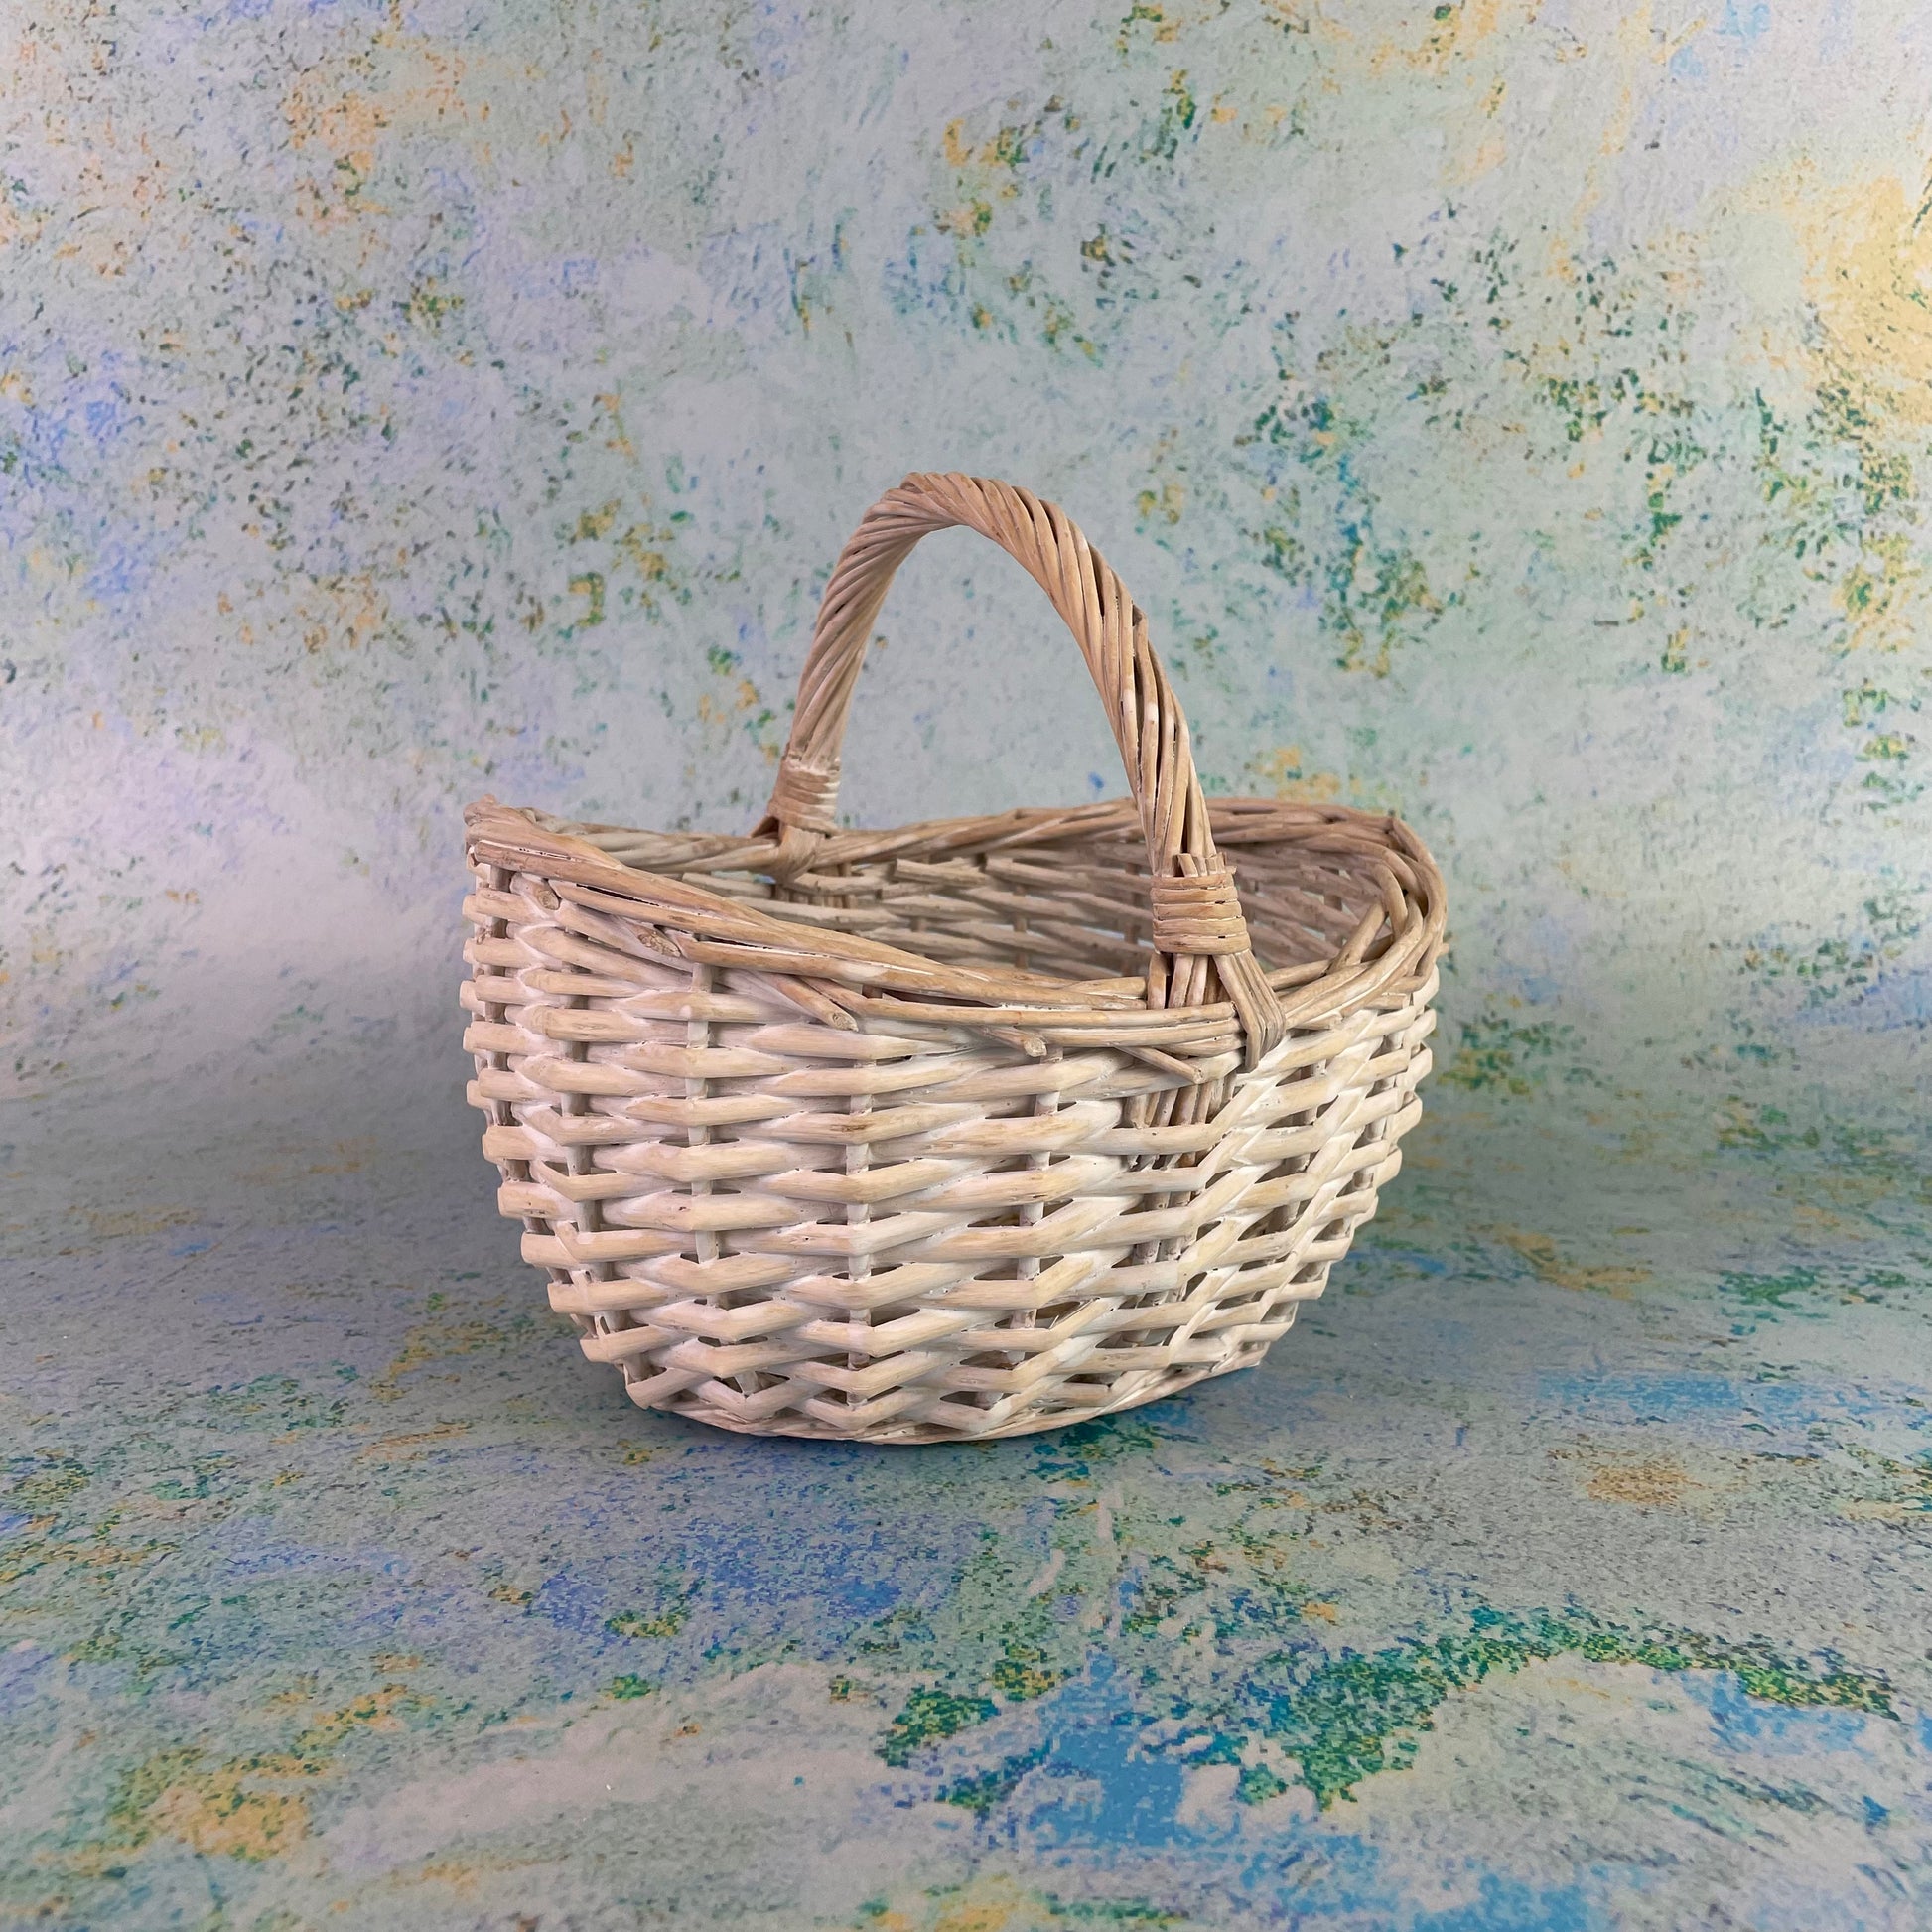 Small Easter Egg Hunt Basket - White Wicker – Basket Barn